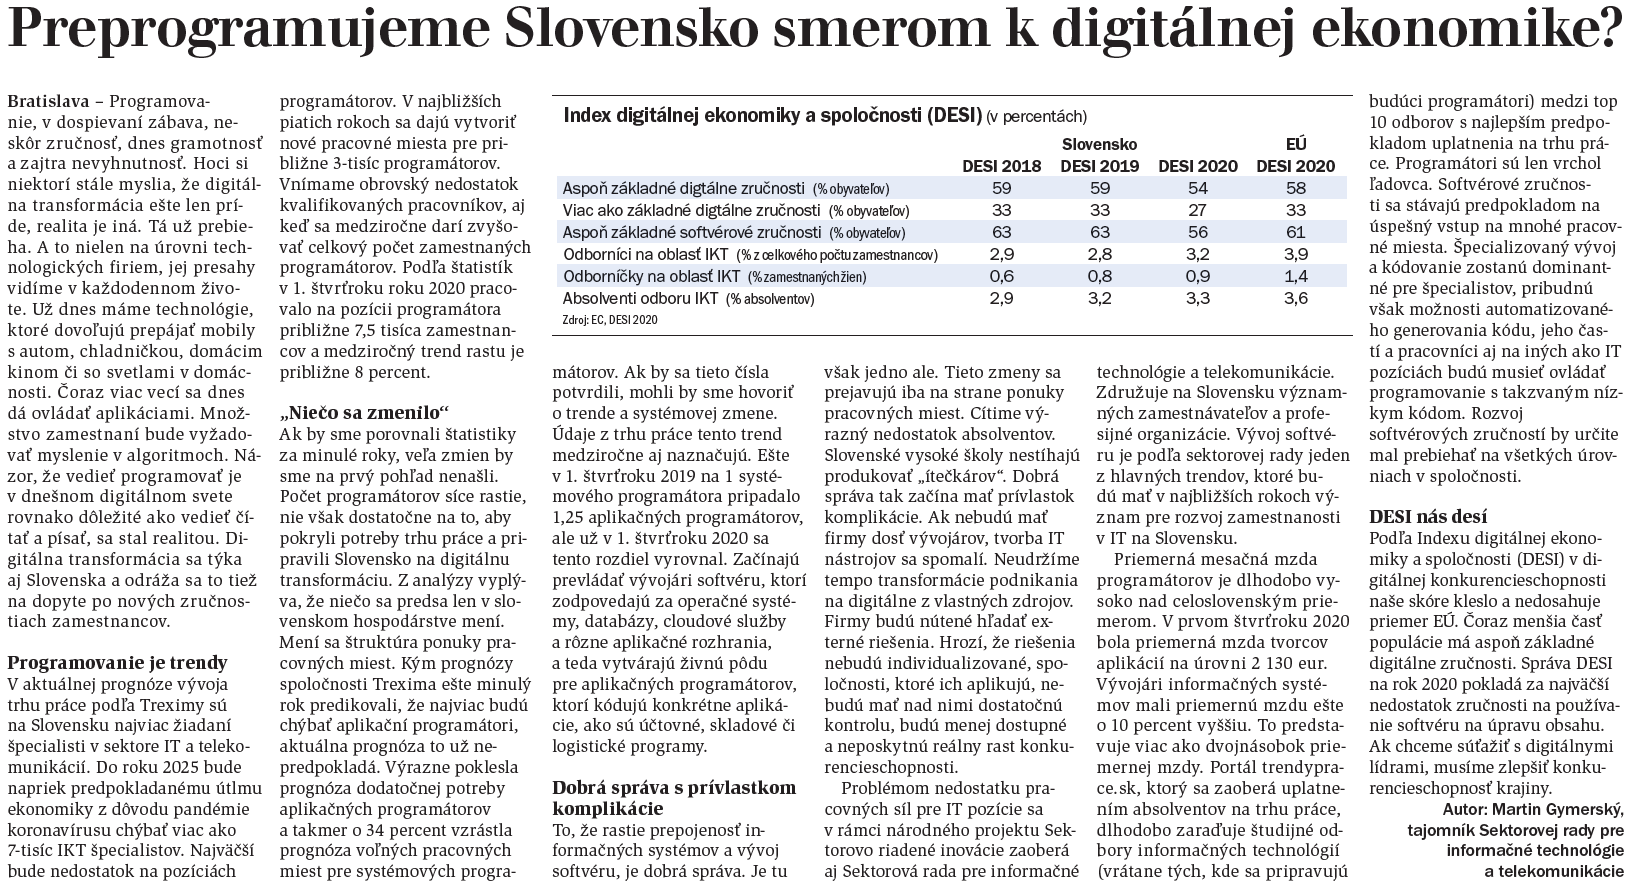 Preprogramujeme Slovensko smerom k digitálnej ekonomike? v HN